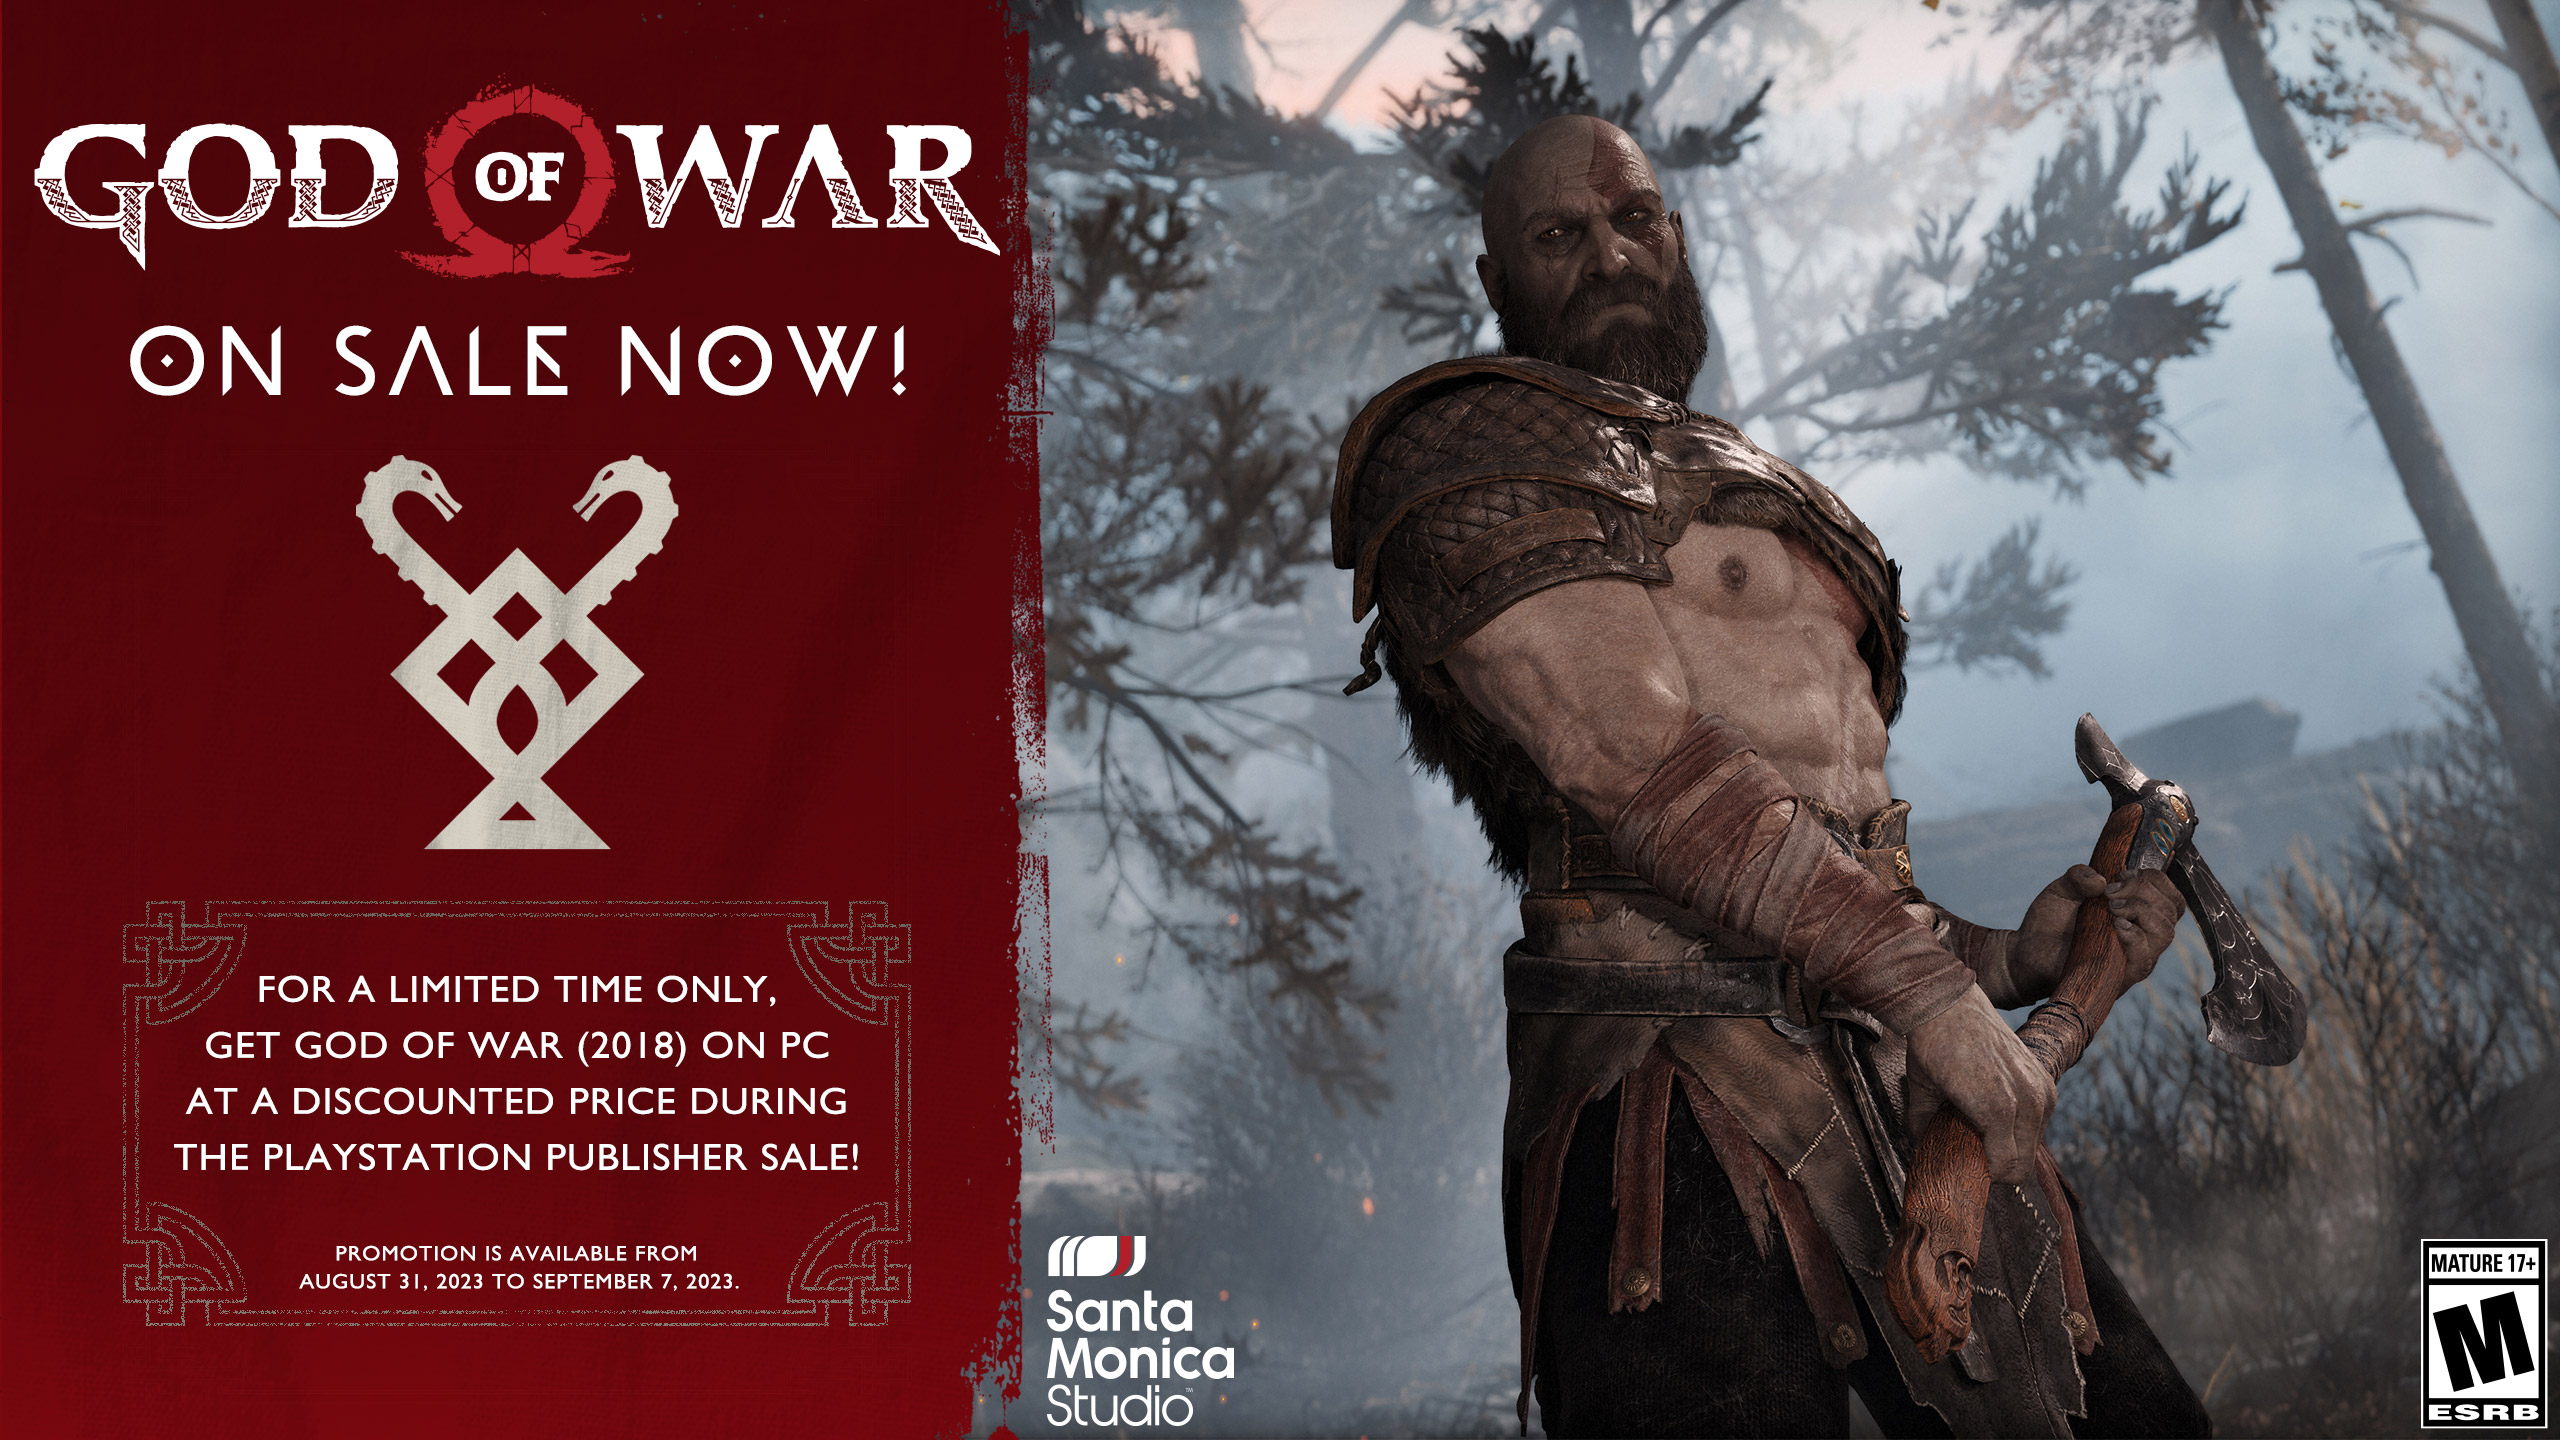 God of War Ragnarök wasn't restricted by PS4, according to Santa Monica  Studio - Meristation